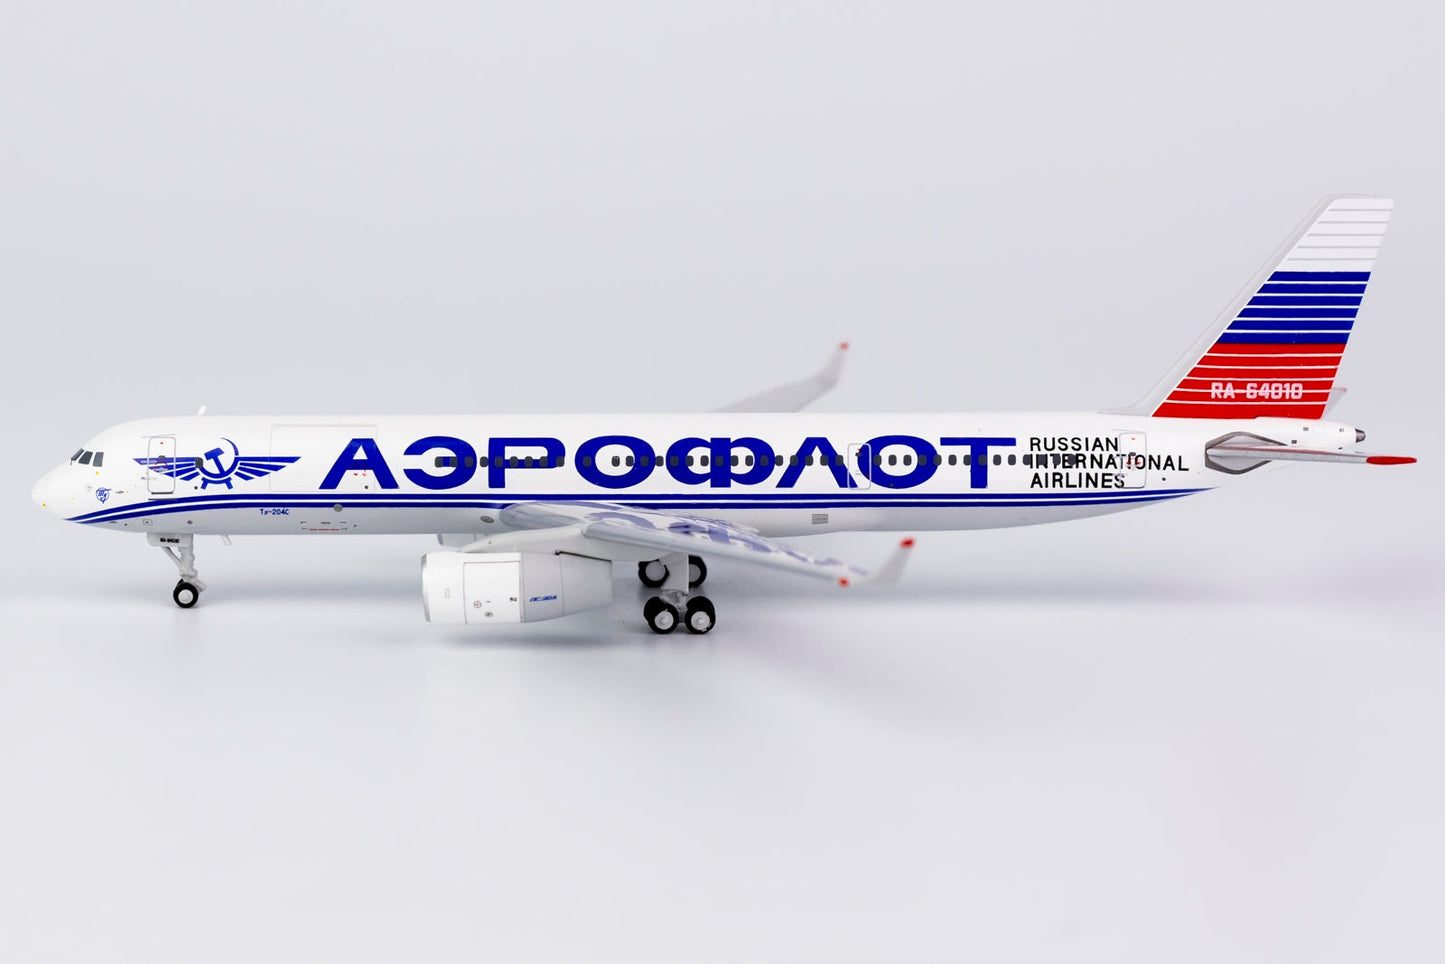 *1/400 Aeroflot Tu-204-100S NG Models 40009